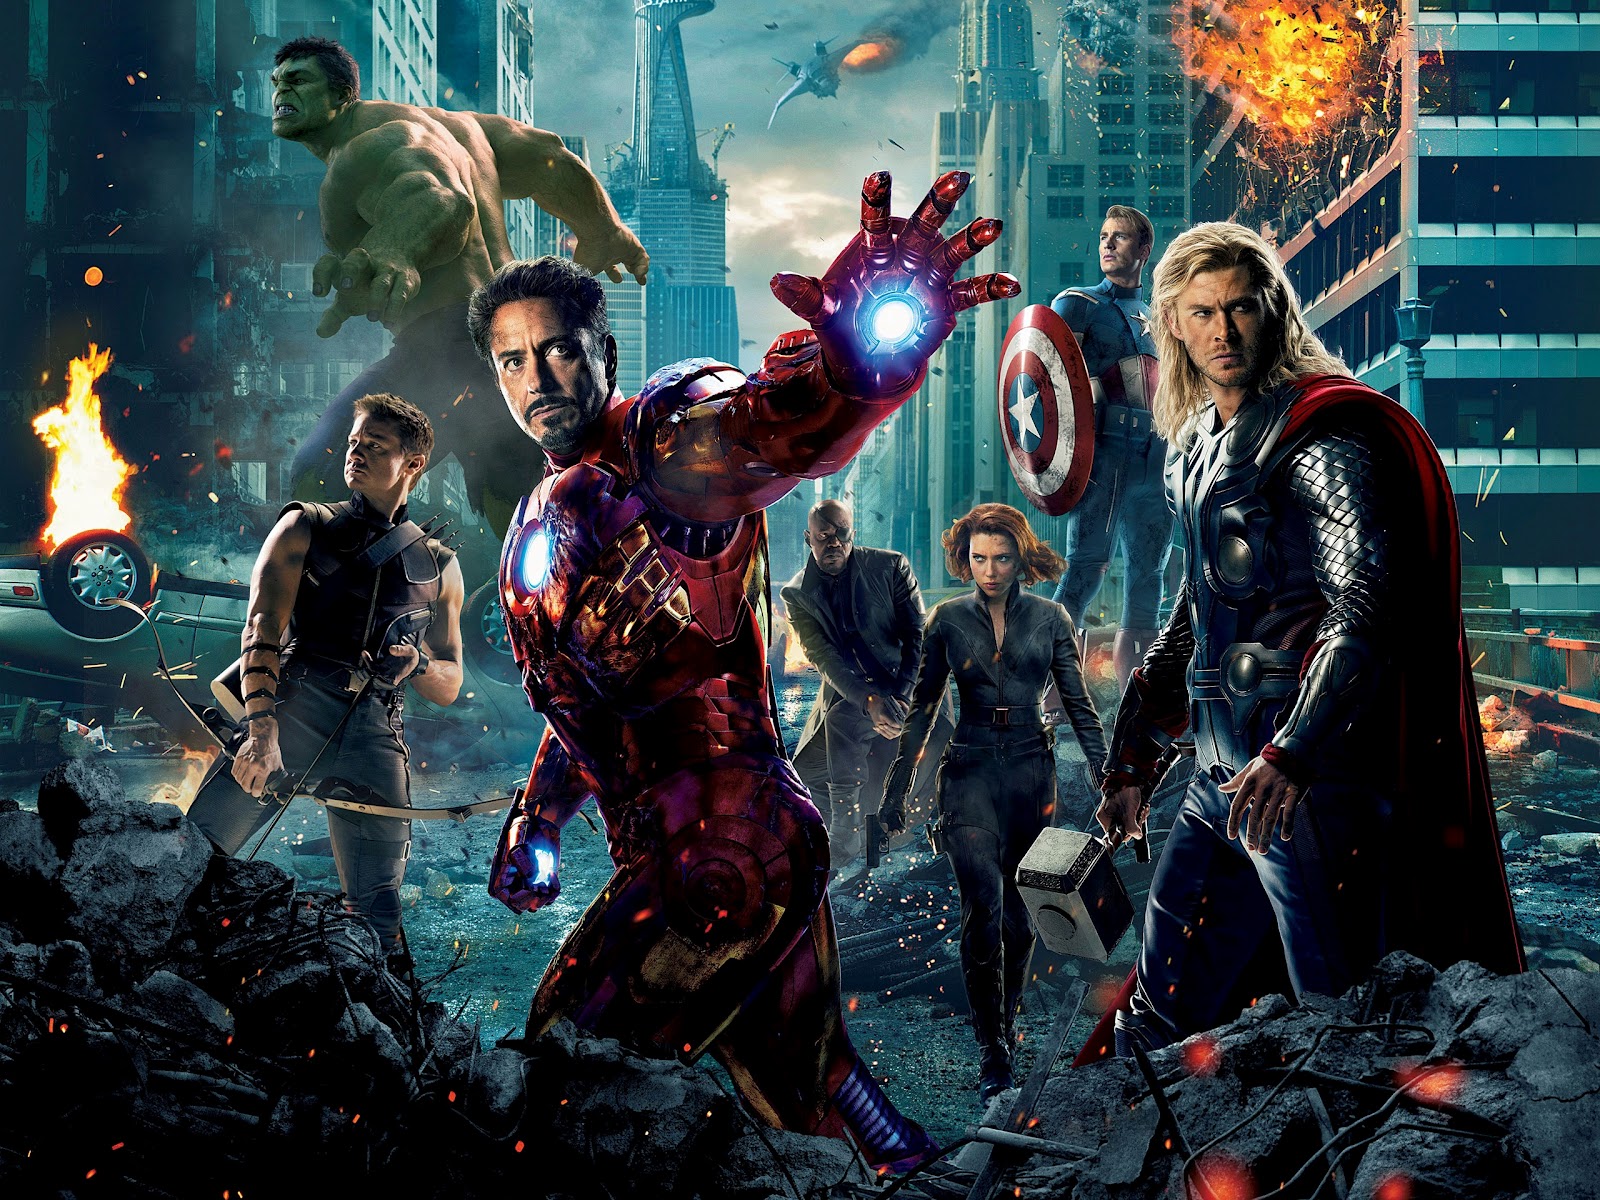 http://2.bp.blogspot.com/-1CkmNqnTDgg/T7J154m_25I/AAAAAAAAAC8/KXtvZLh9XLw/s1600/2012-The-Avengers-movie-HD-wide-wallpaper-screensaver-hd-desktop-background-film-poster.jpg